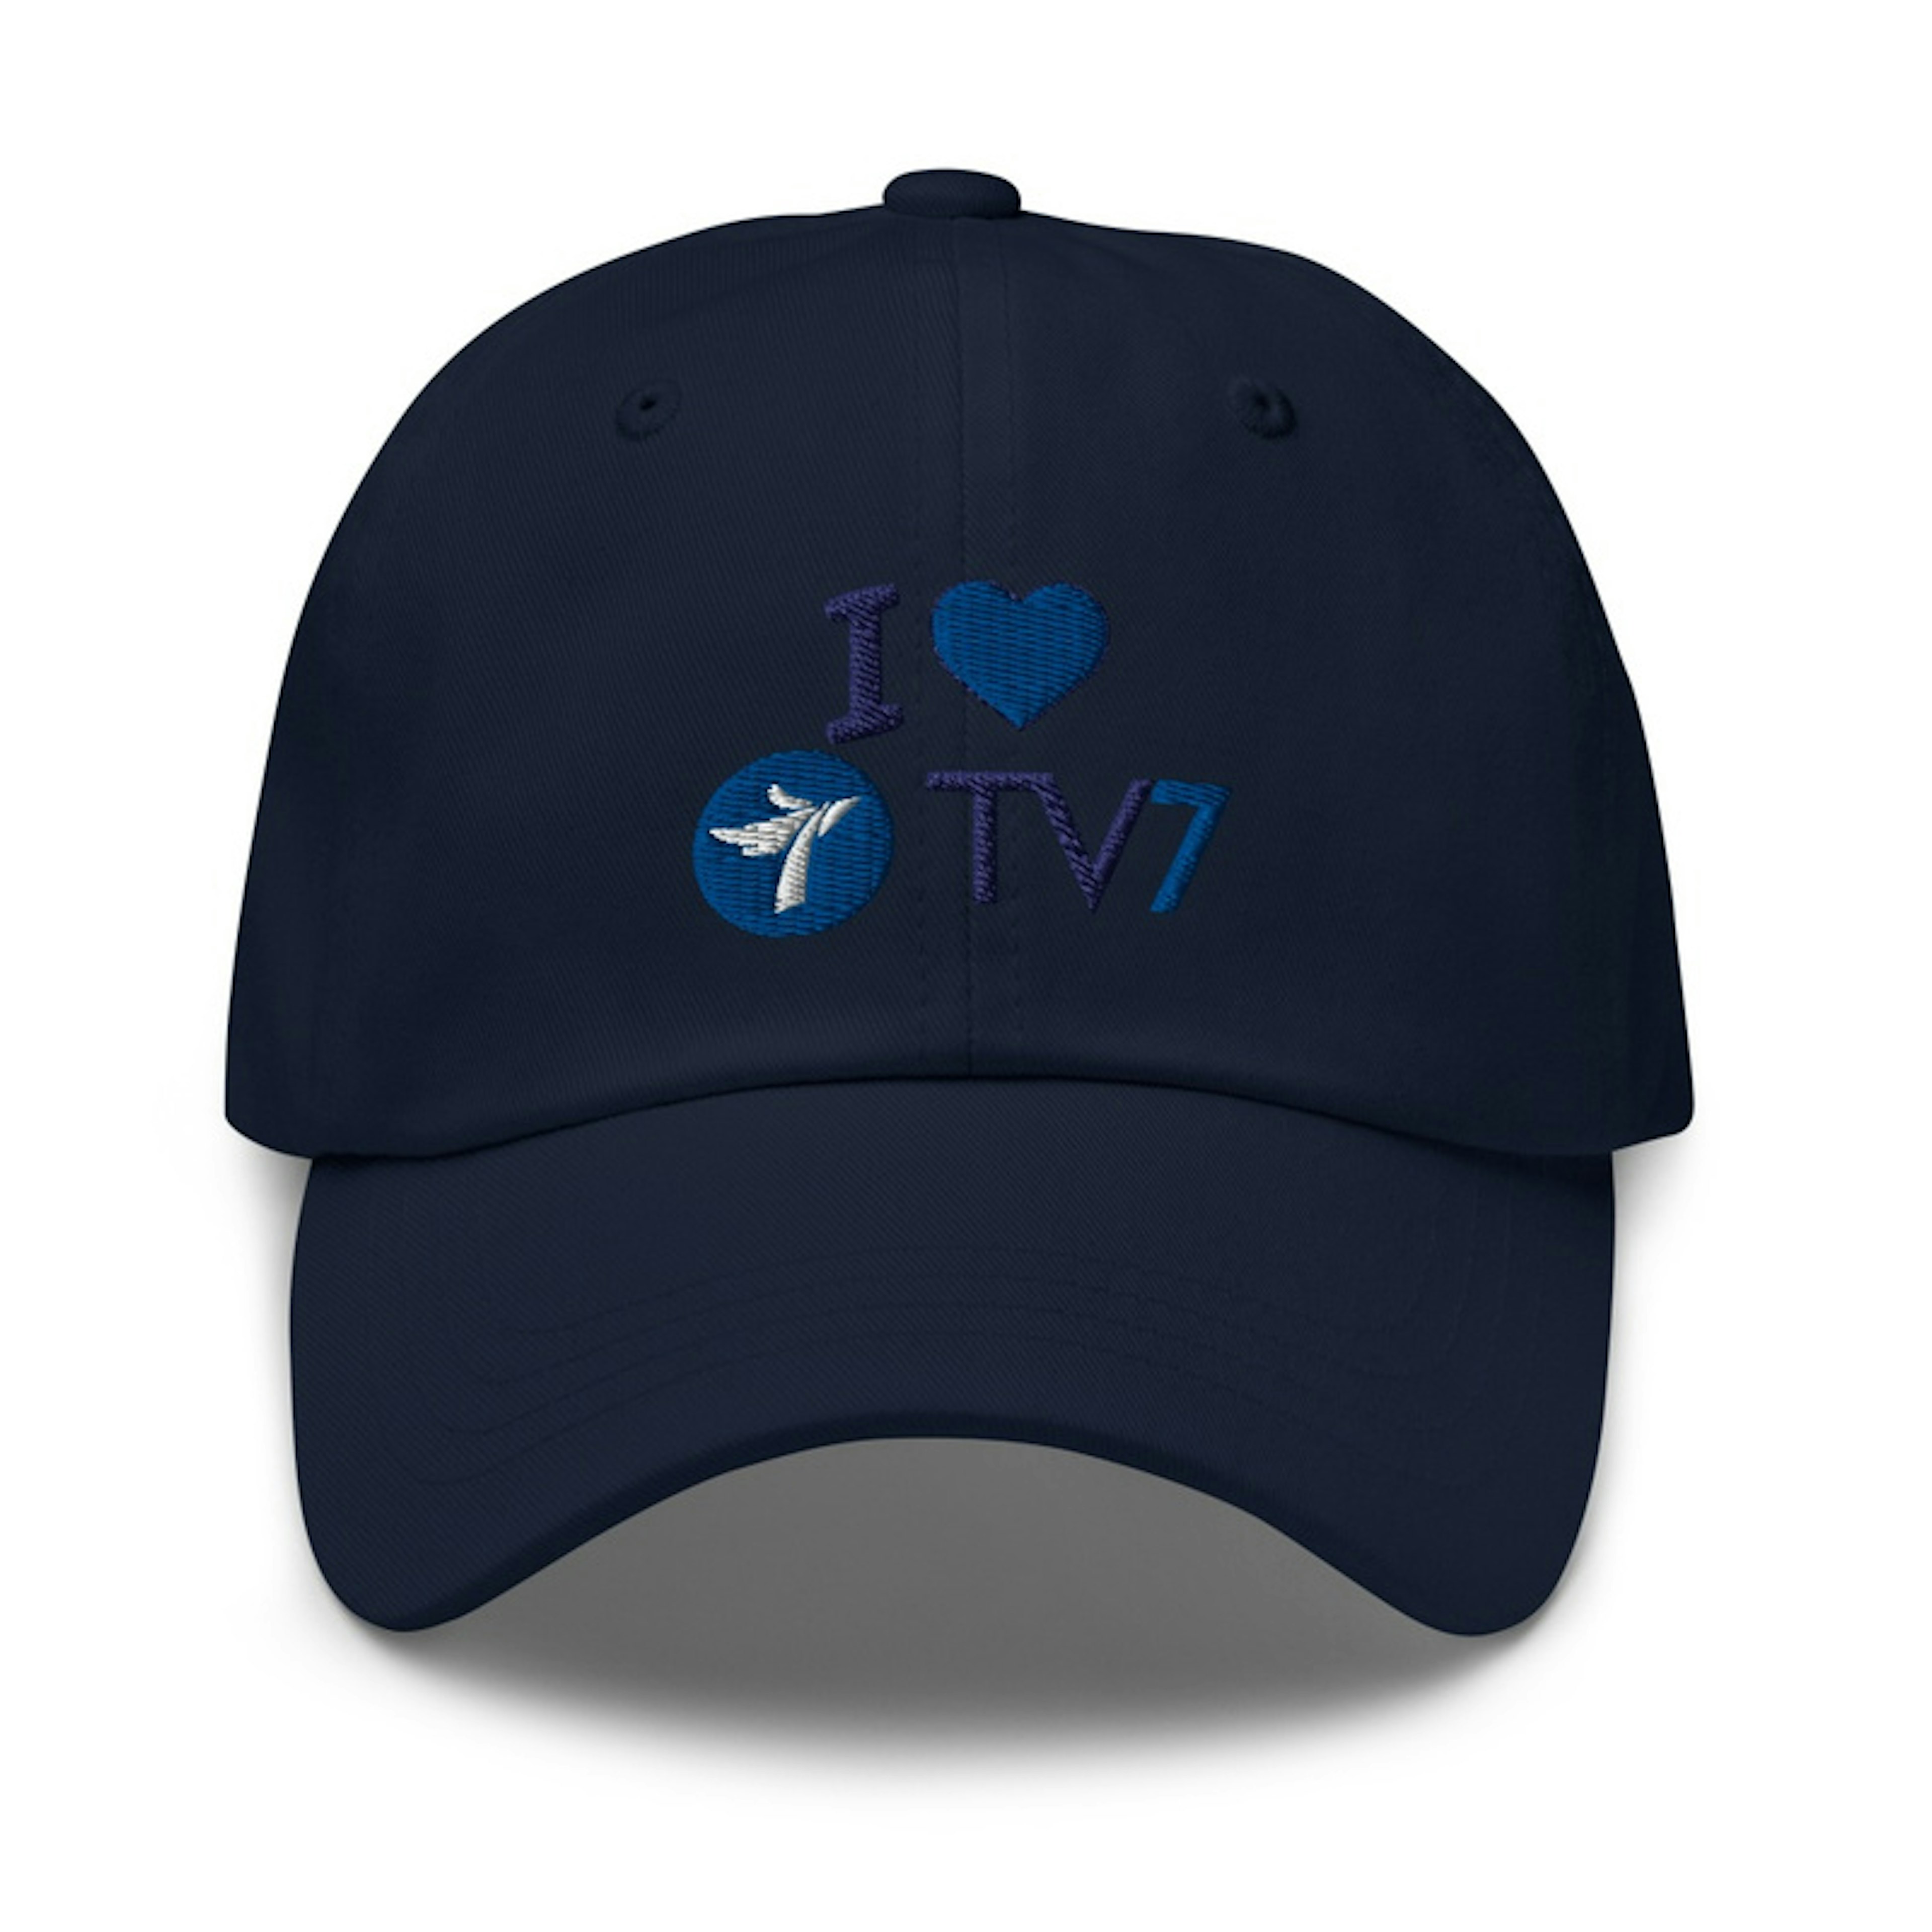 I heart TV7 hat